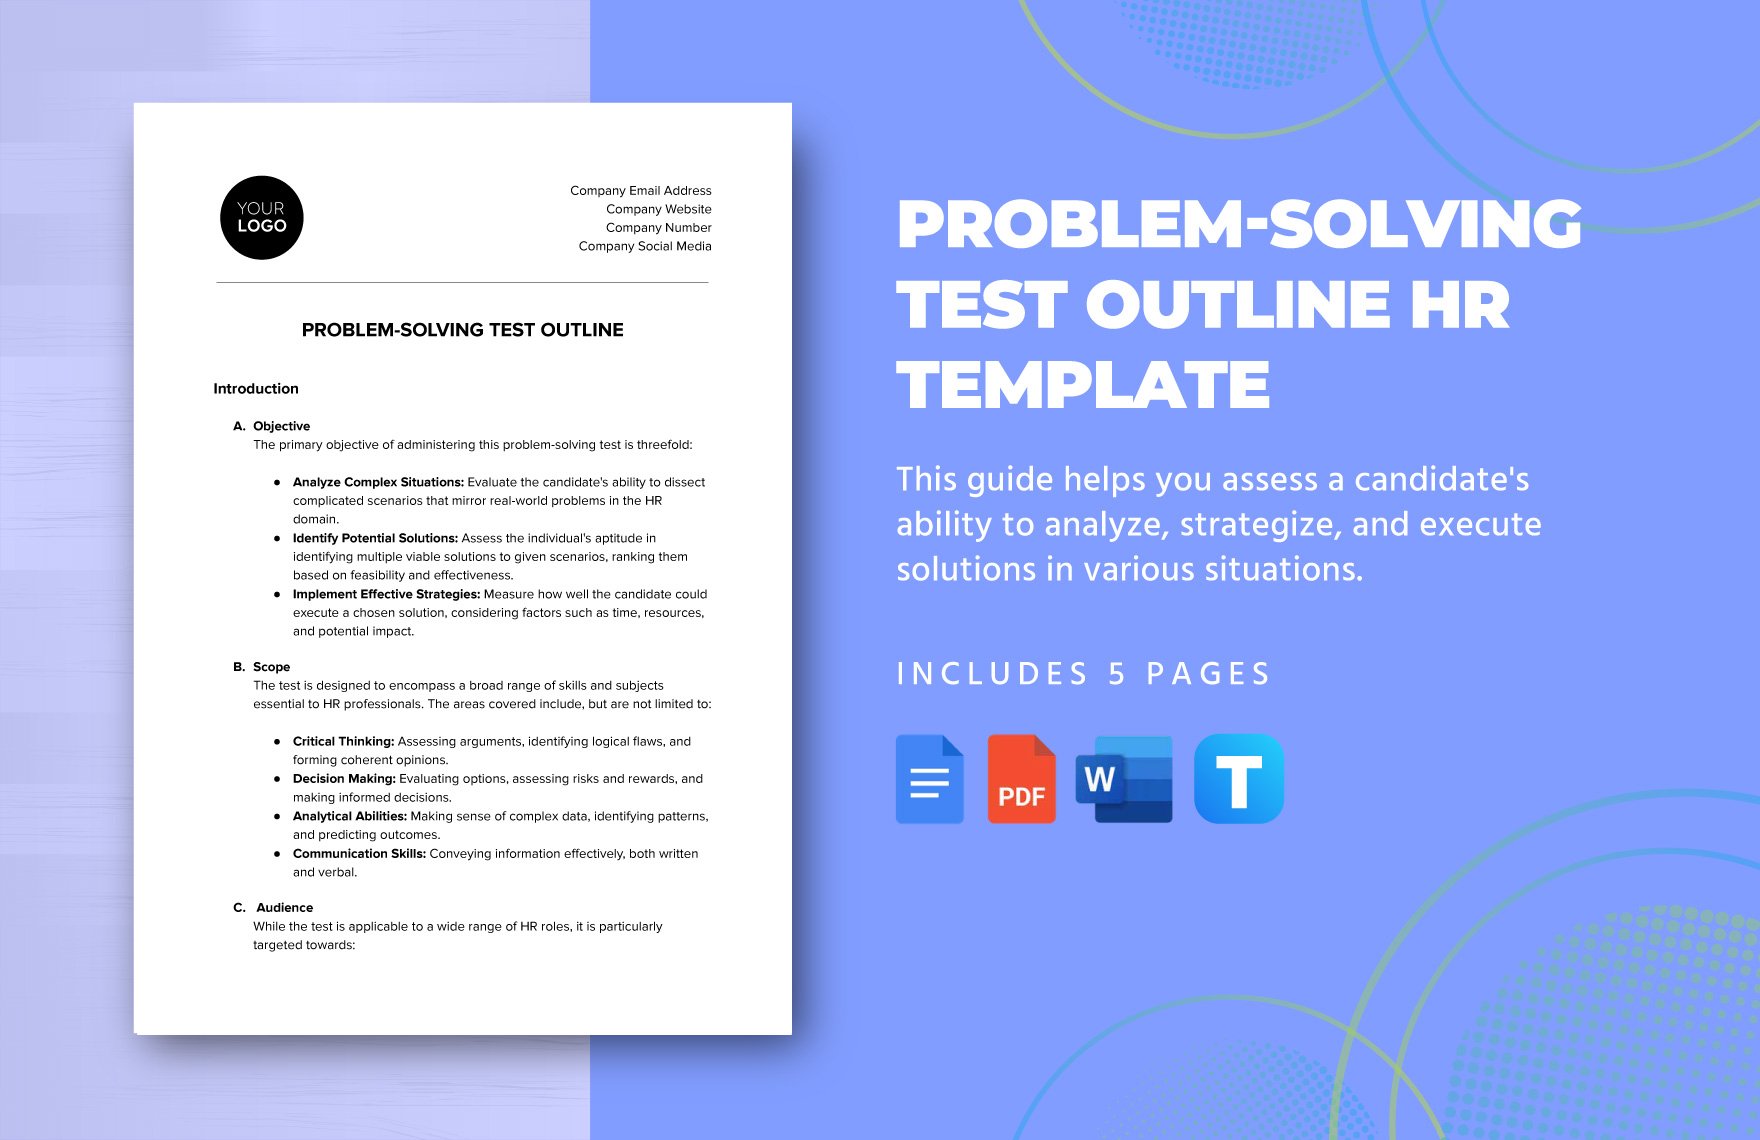 Problem-solving Test Outline HR Template